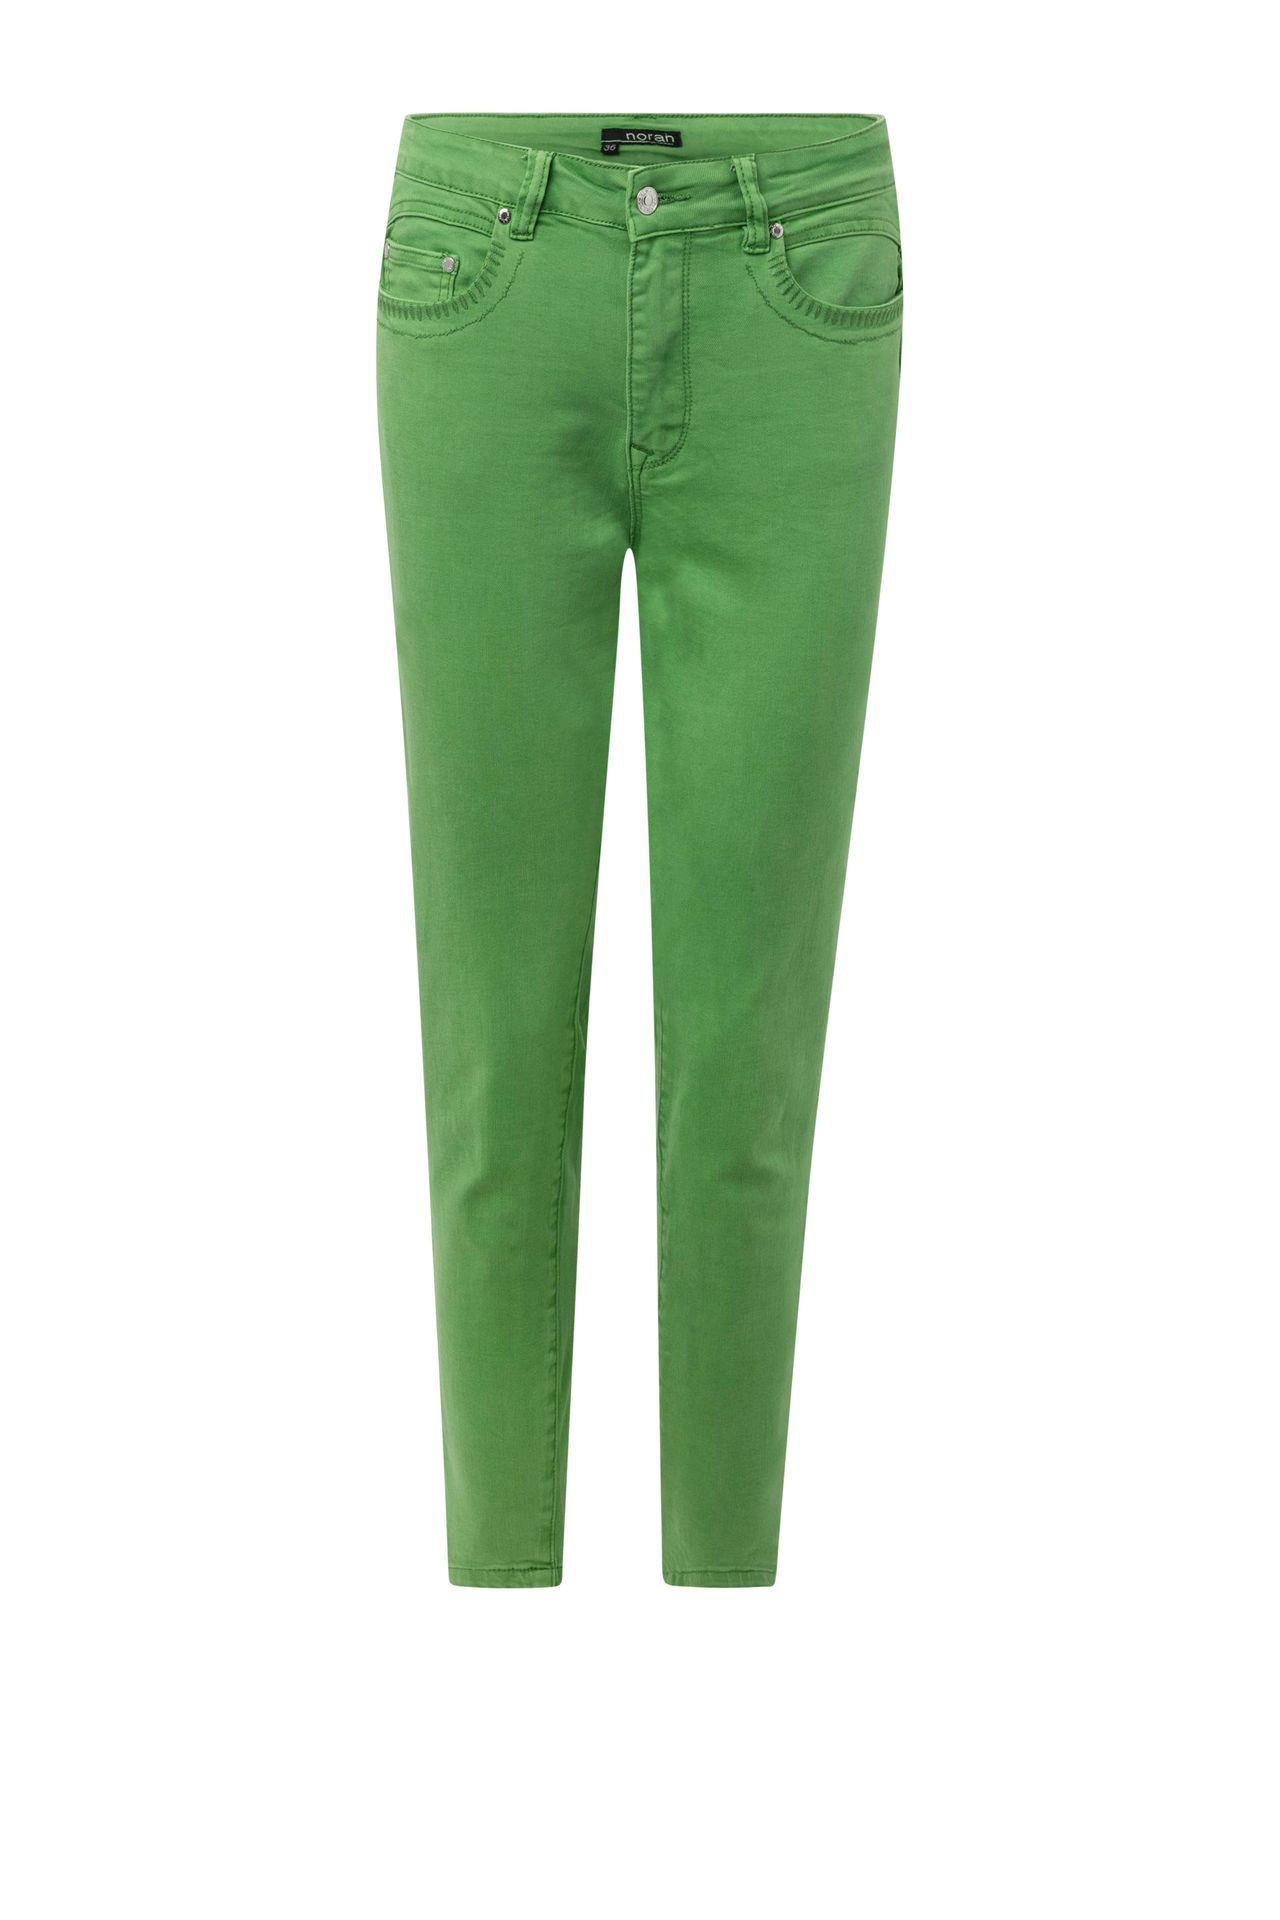 Norah Groene denim jeans green 213891-500